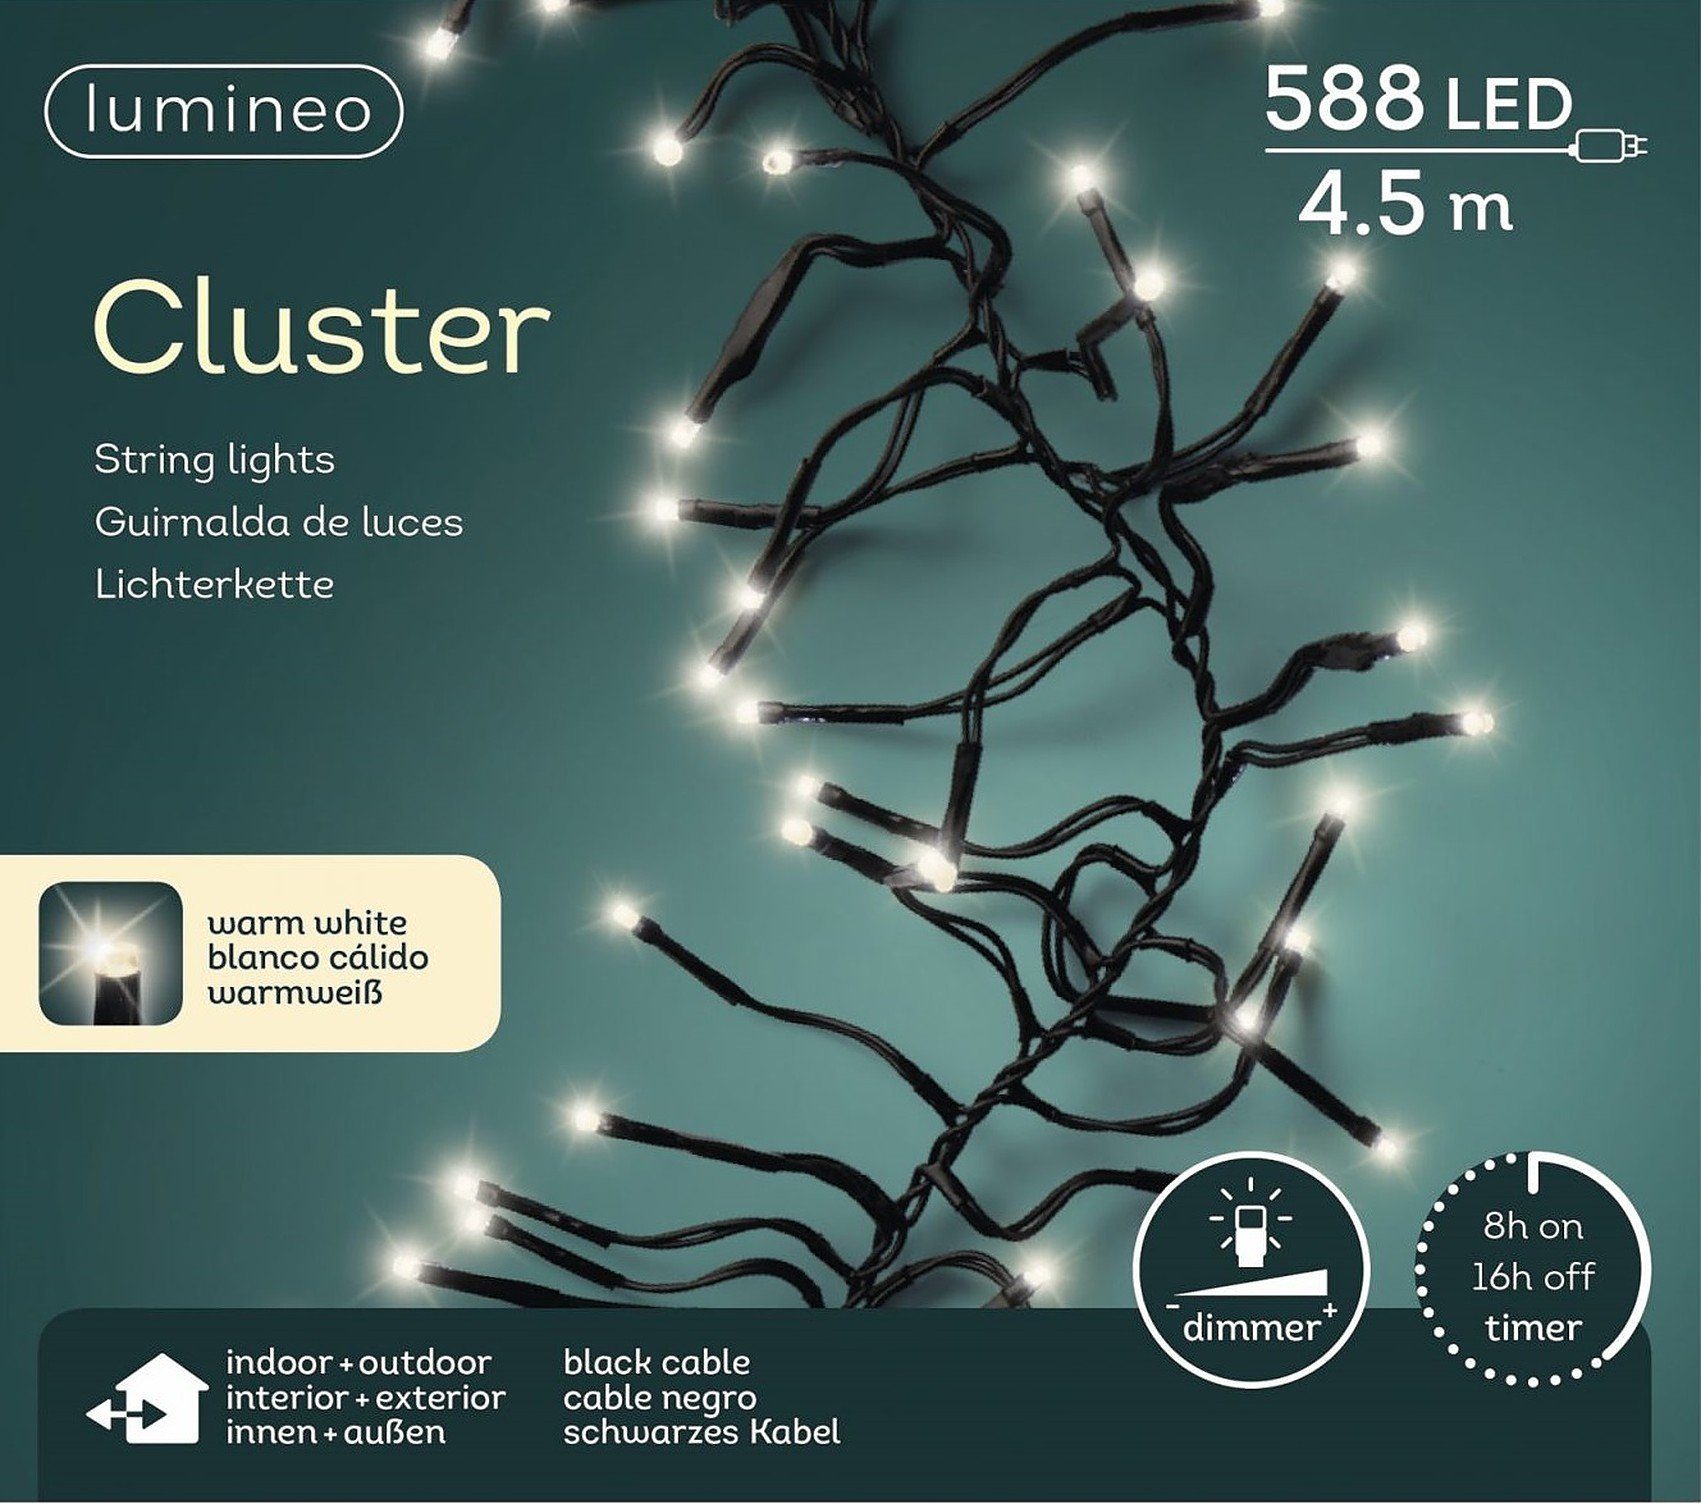 Cluster Outdoor LED-Lichterkette 4,5 Lichterkette warm Indoor, Timer, Kabel, m weiß, schwarzes 588 Lumineo LED Dimmbar, Lumineo